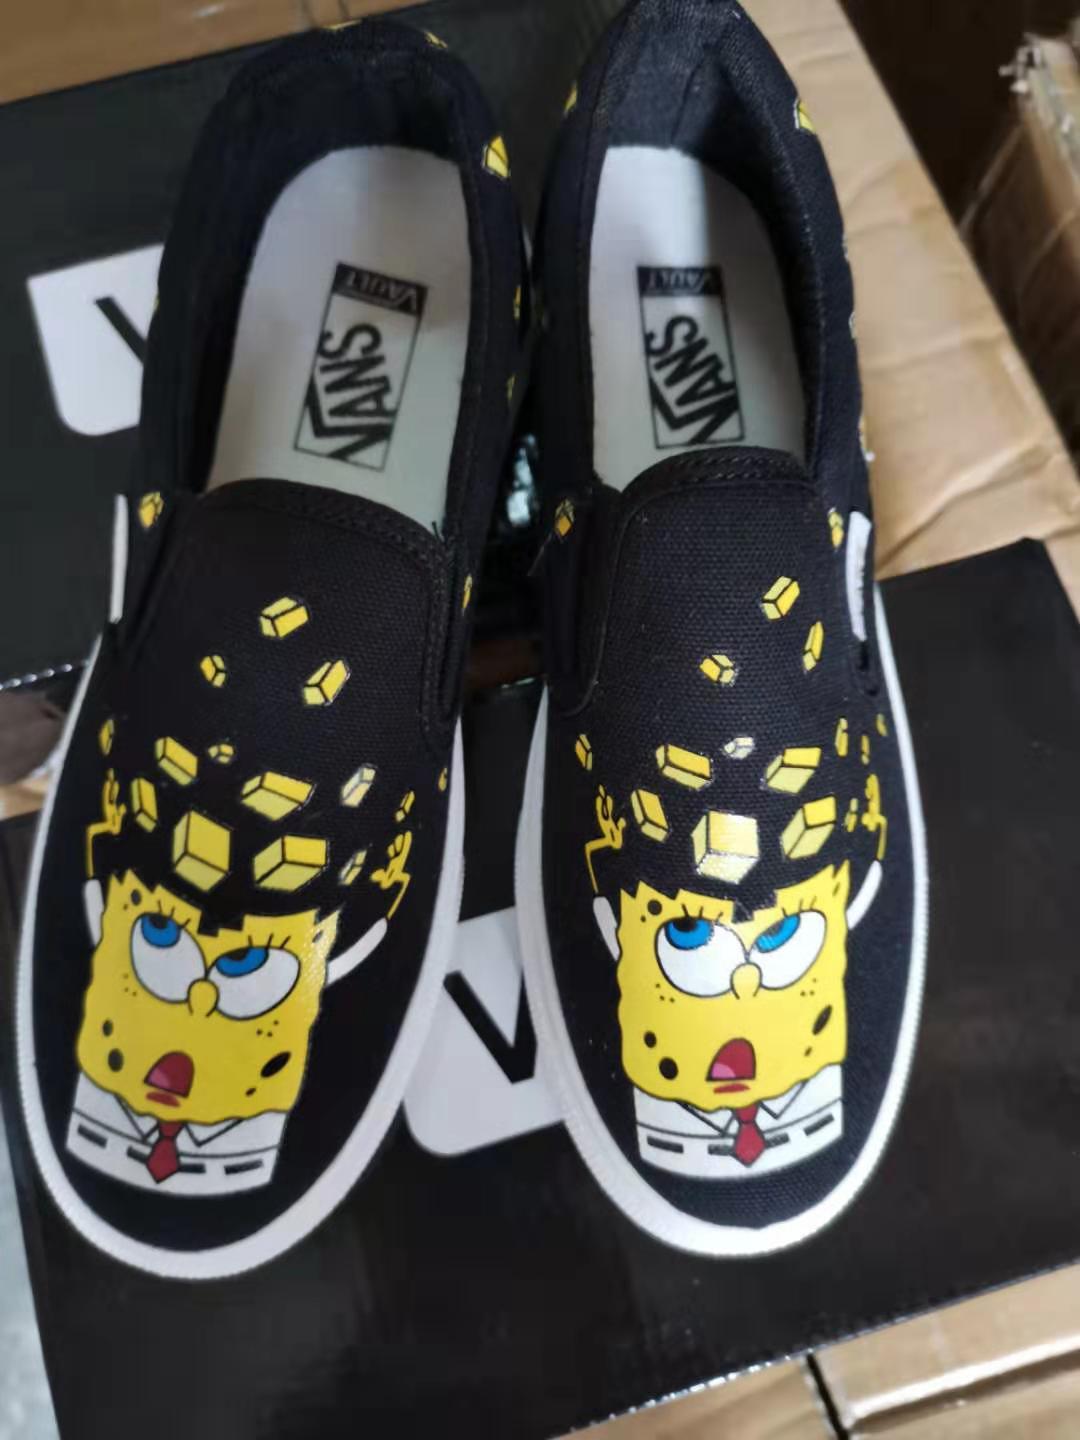 spongebob platform shoes